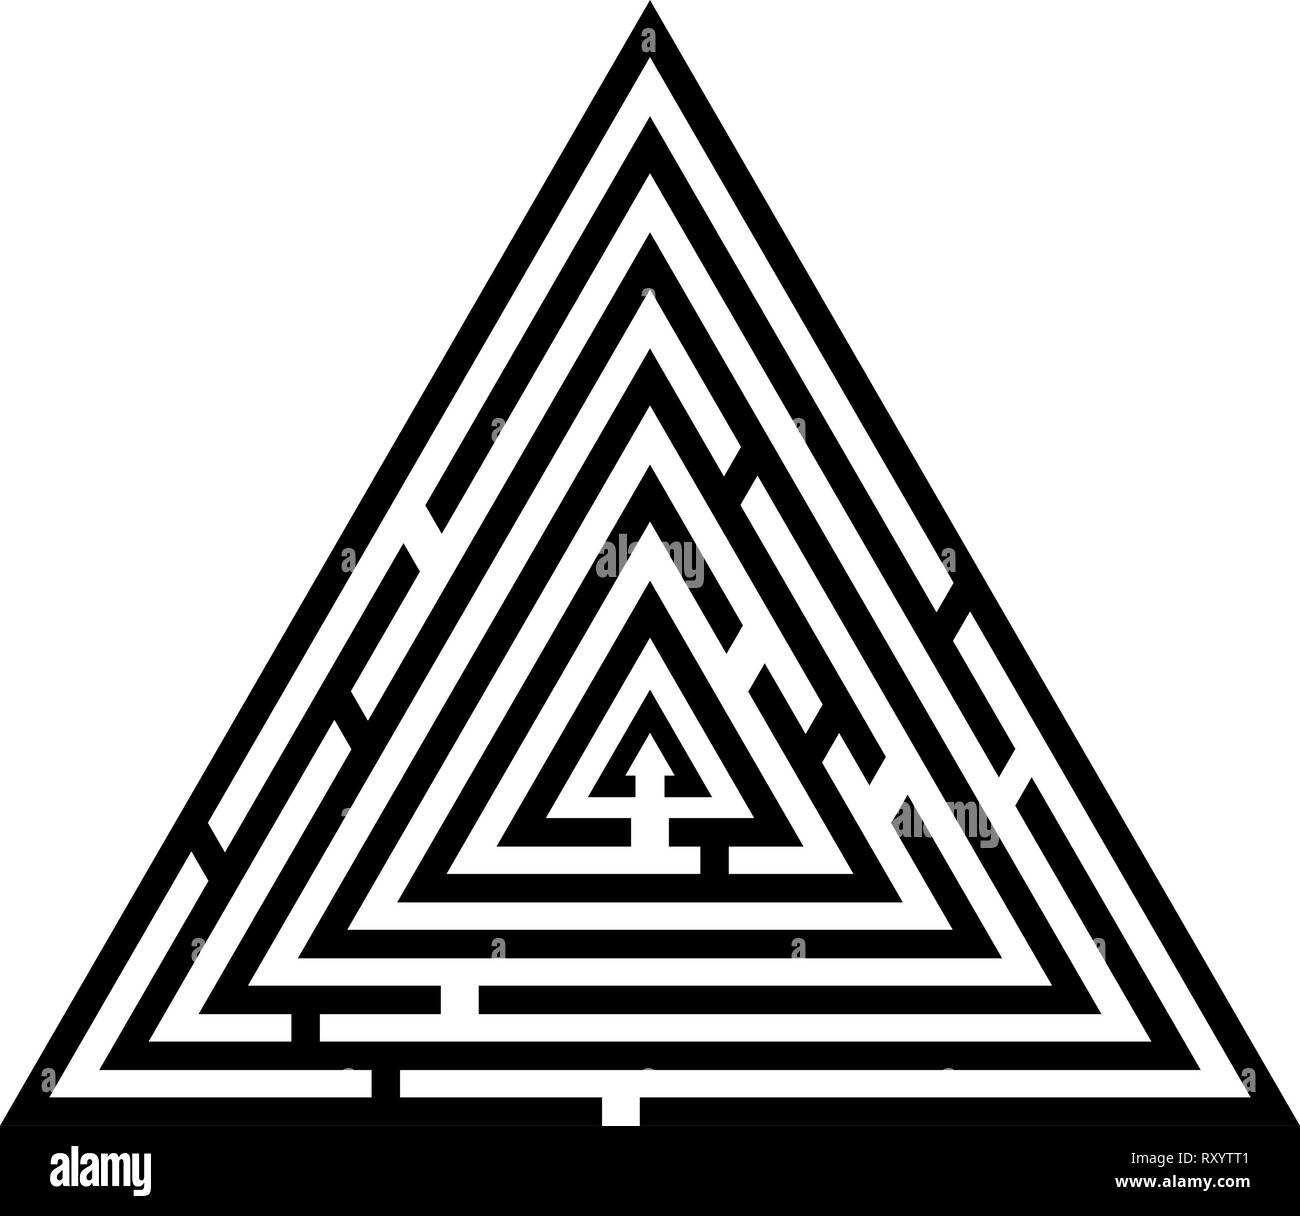 Labyrinthe Labyrinthe Labyrinthe triangulaire énigme énigme icon noir vector illustration couleur style plat simple image Illustration de Vecteur